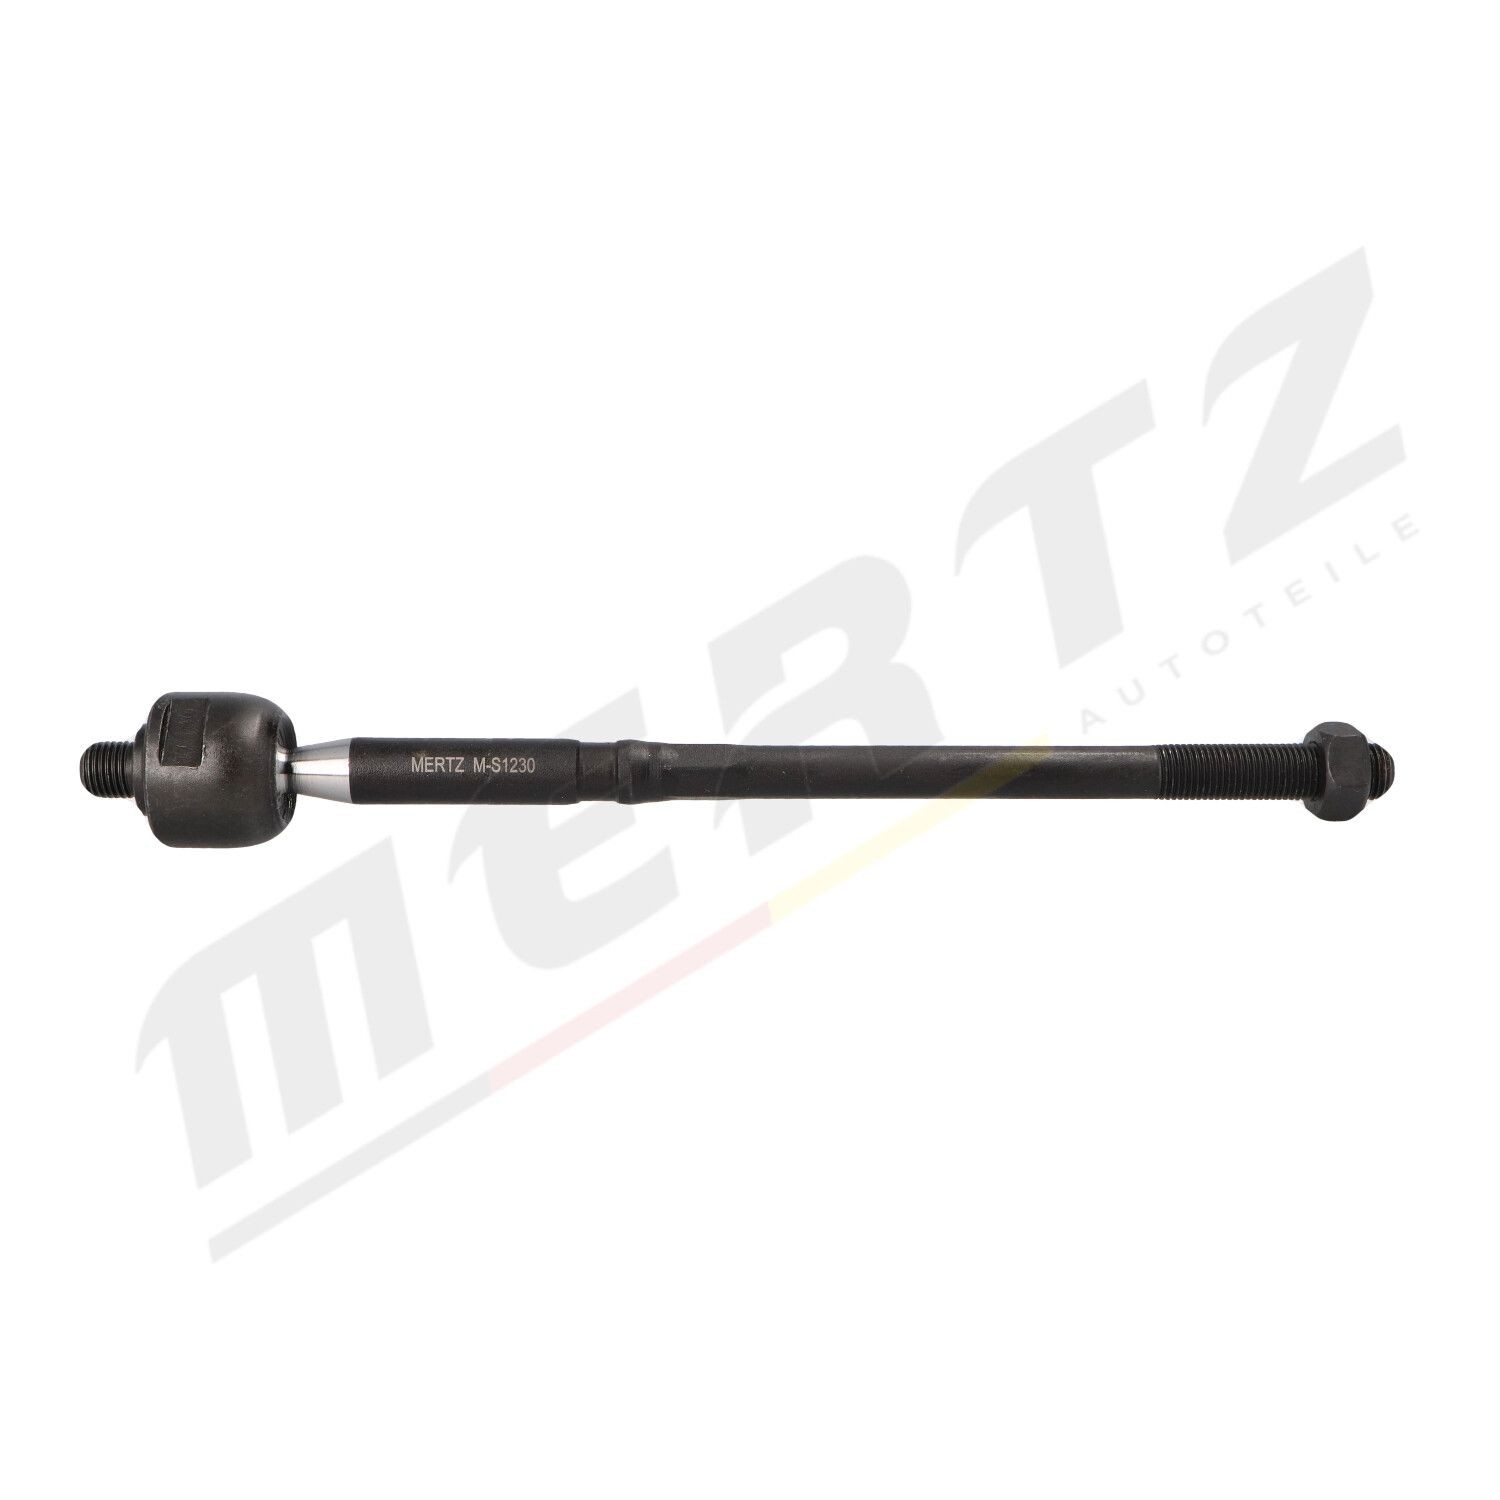 Original M-S1230 MERTZ Inner track rod end FORD